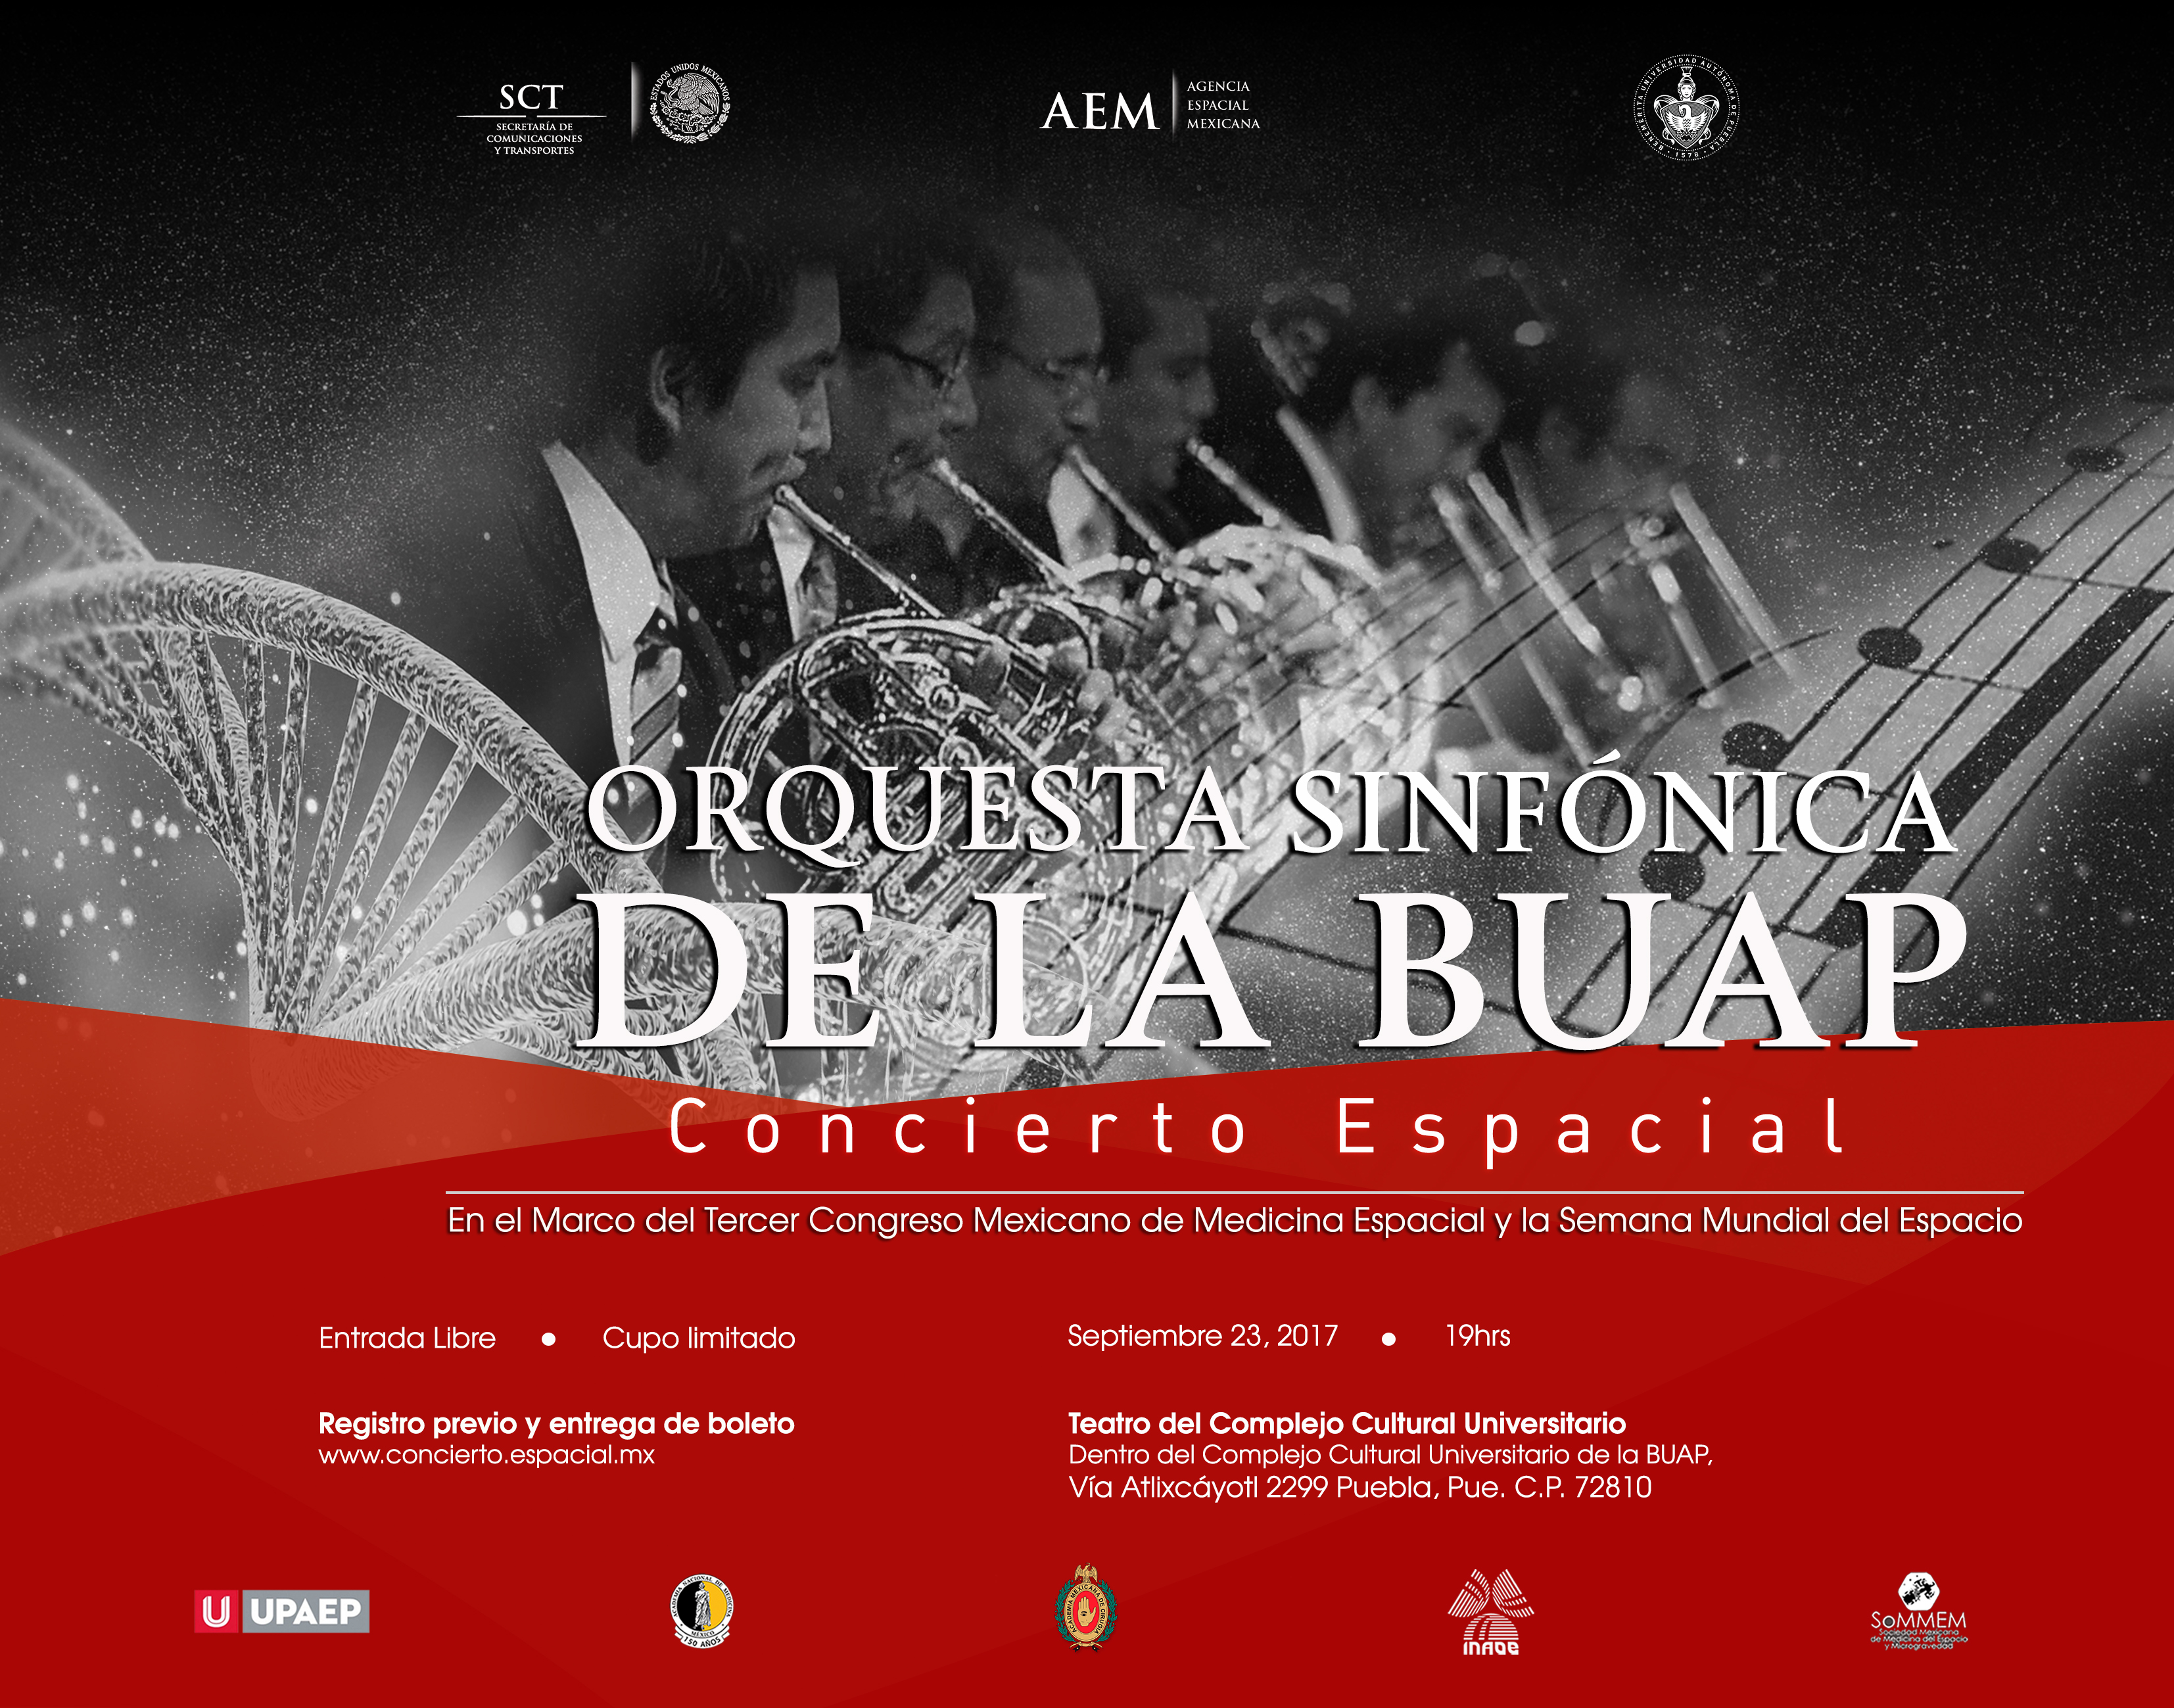 Realizarán concierto sinfónico espacial como actividad previa del Tercer Congreso Mexicano de Medicina Espacial y la Semana Mundial del Espacio de la ONU